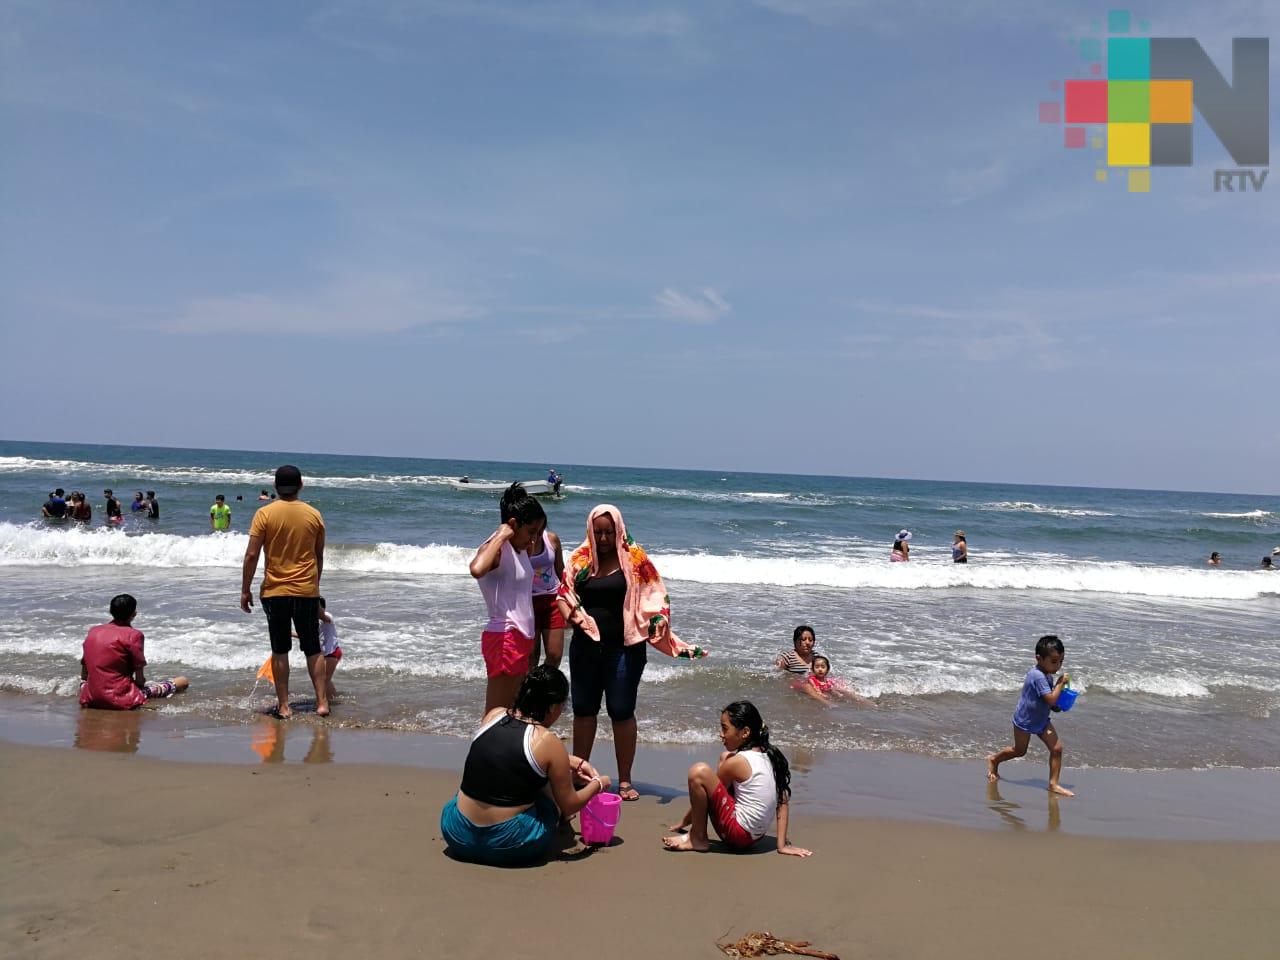 FF 8 no impide a turistas disfrutar del malecón de Veracruz